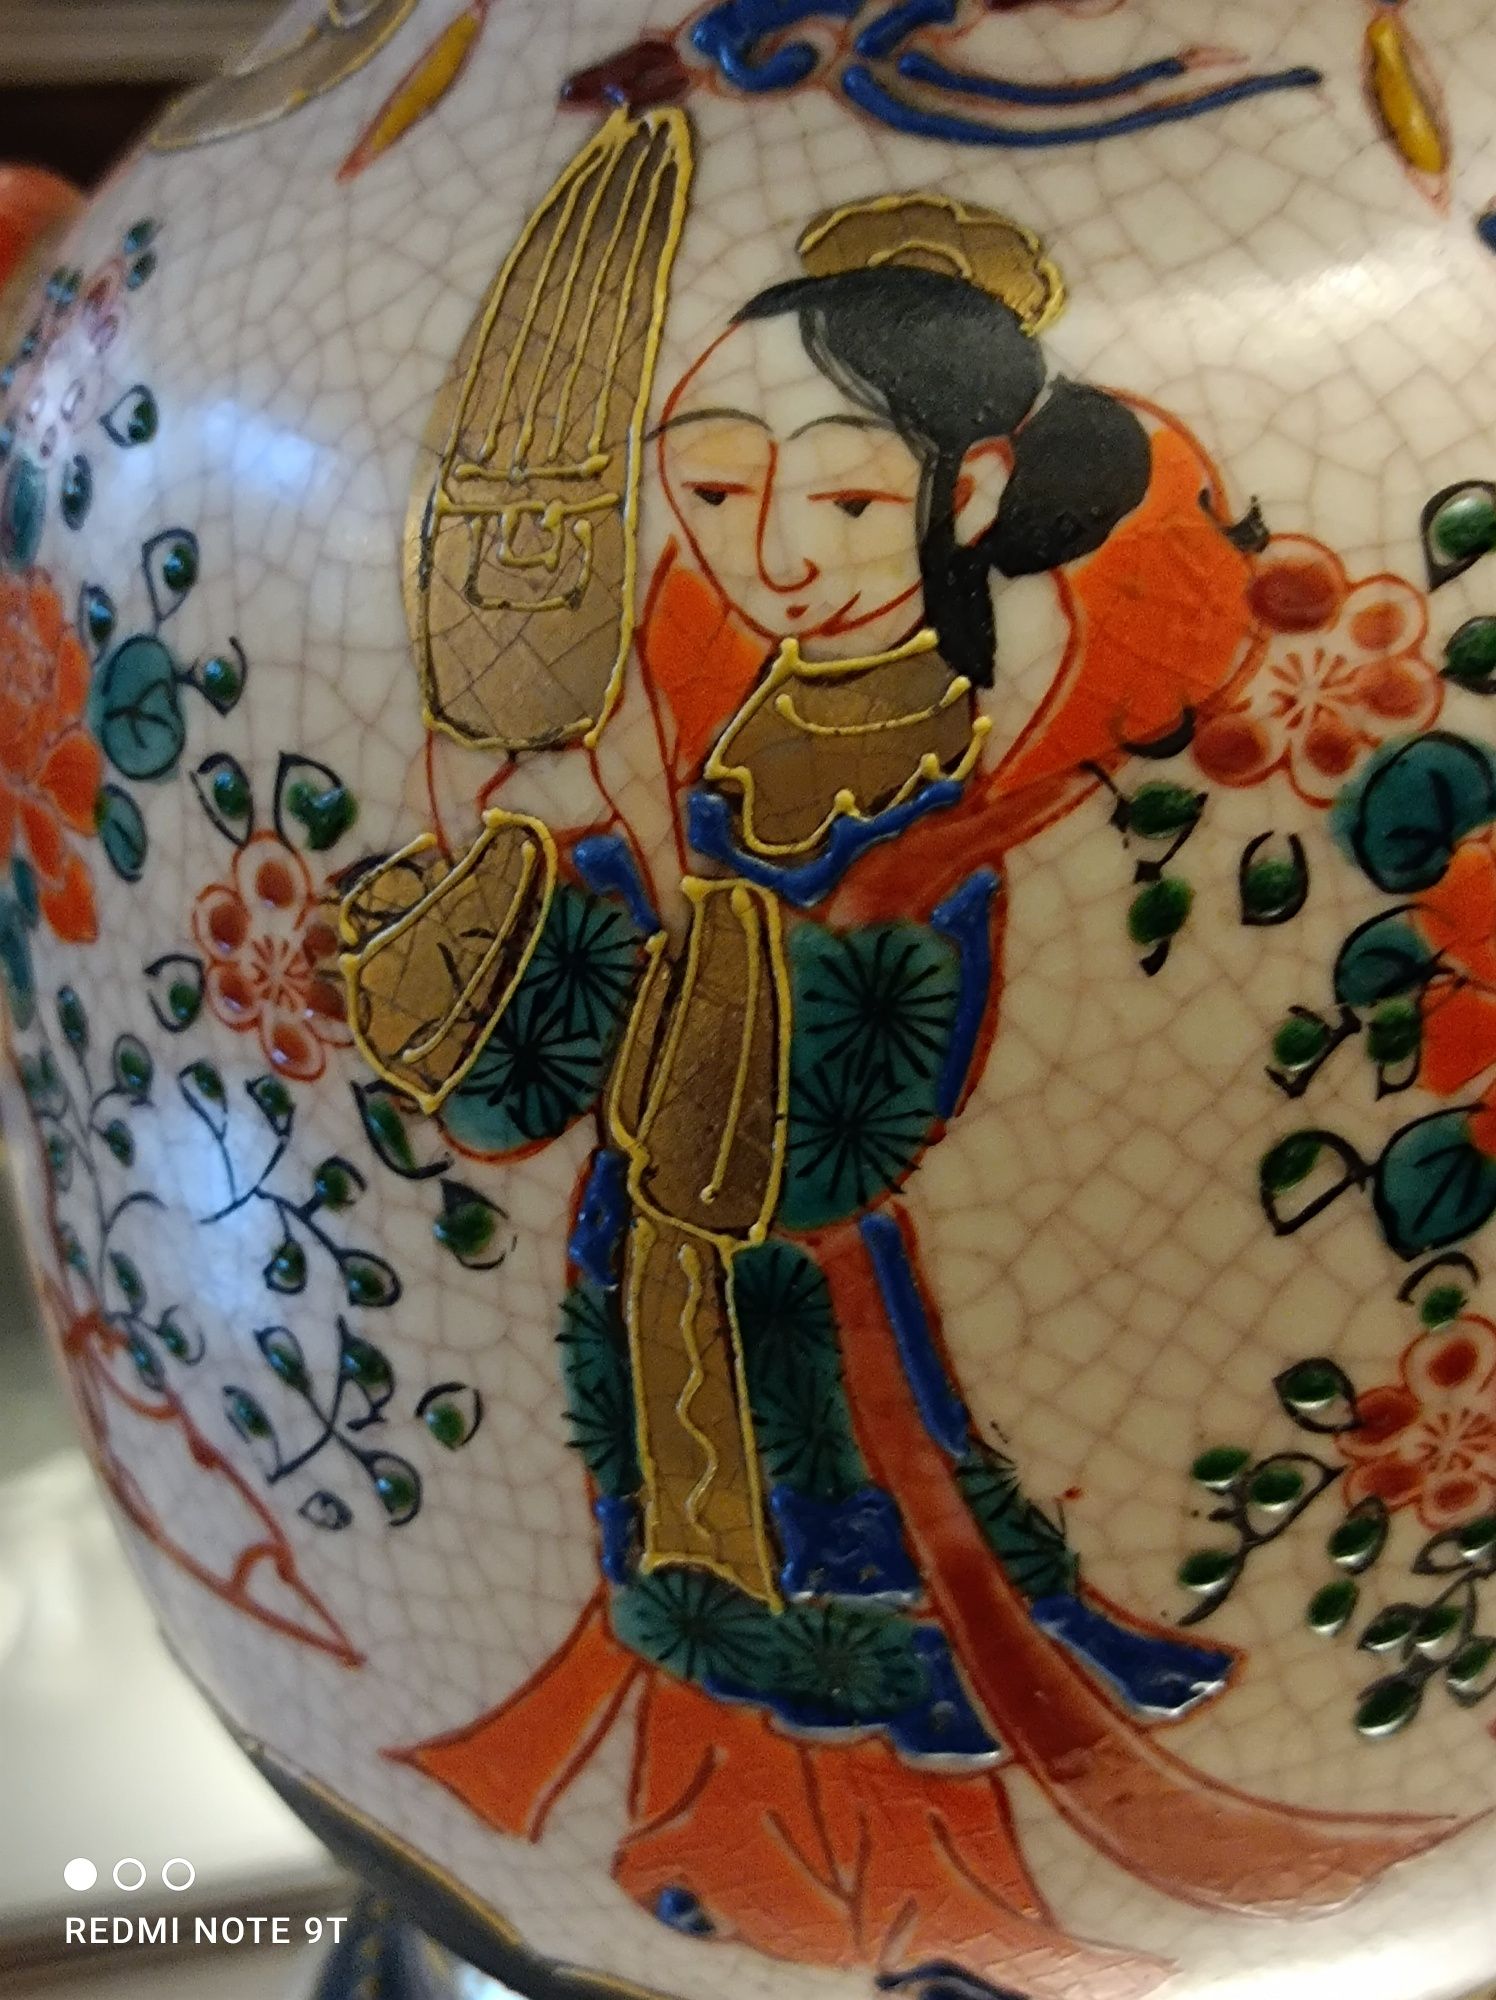 Porcelanowy waza ręcznie malowana  XIX w.  Waza Satsuma .